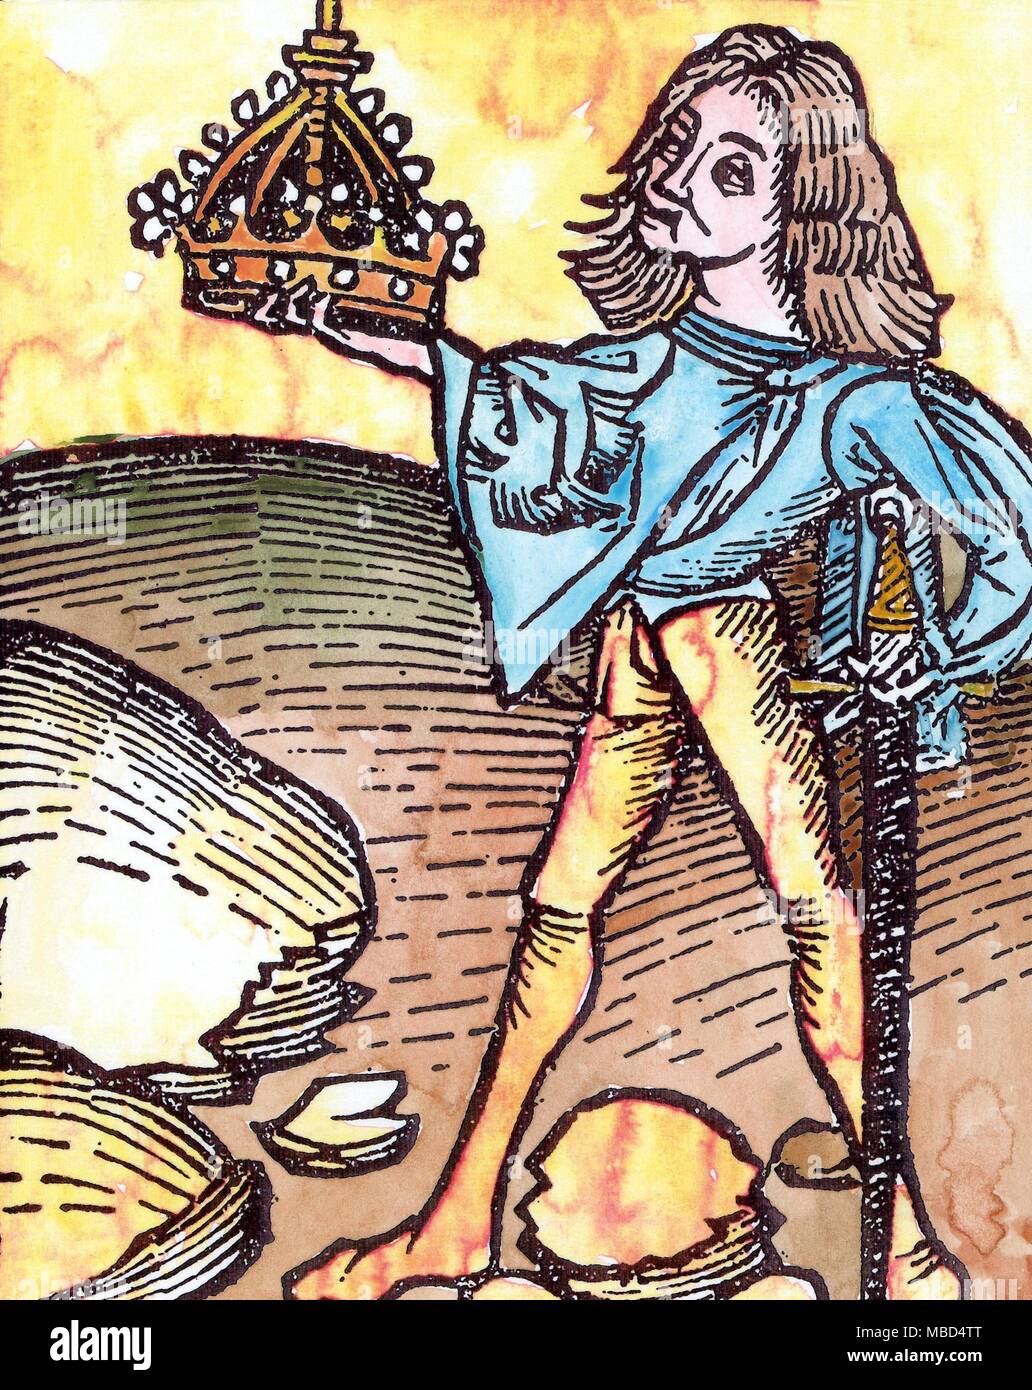 Amulette - EDELSTEINE - EDELSTEINE OPAL - Hand - farbige Holz - Gravur aus Johananis de Cuba, Hortus Sanitatis, 1483. Die Abbildung zeigt die Orphanus, von Juwelieren in der Kaiserlichen Krone des Heiligen Römischen Kaisers. Es ist zu einem wurden besonders schöne und wunderbare große Opal, die (laut Albertus Magnus, in Opera Omnia, V, W.42) früher die Macht zu glänzen in dunklen gesagt hatte. Allerdings, wenn diese ein, Opal, keiner der spezifischen Eigenschaften der zu diesem Stein, es zugeschrieben wurden. Nach dem gemmologists Opal hatte die Macht, den Träger unsichtbar zu machen, die Stockfoto